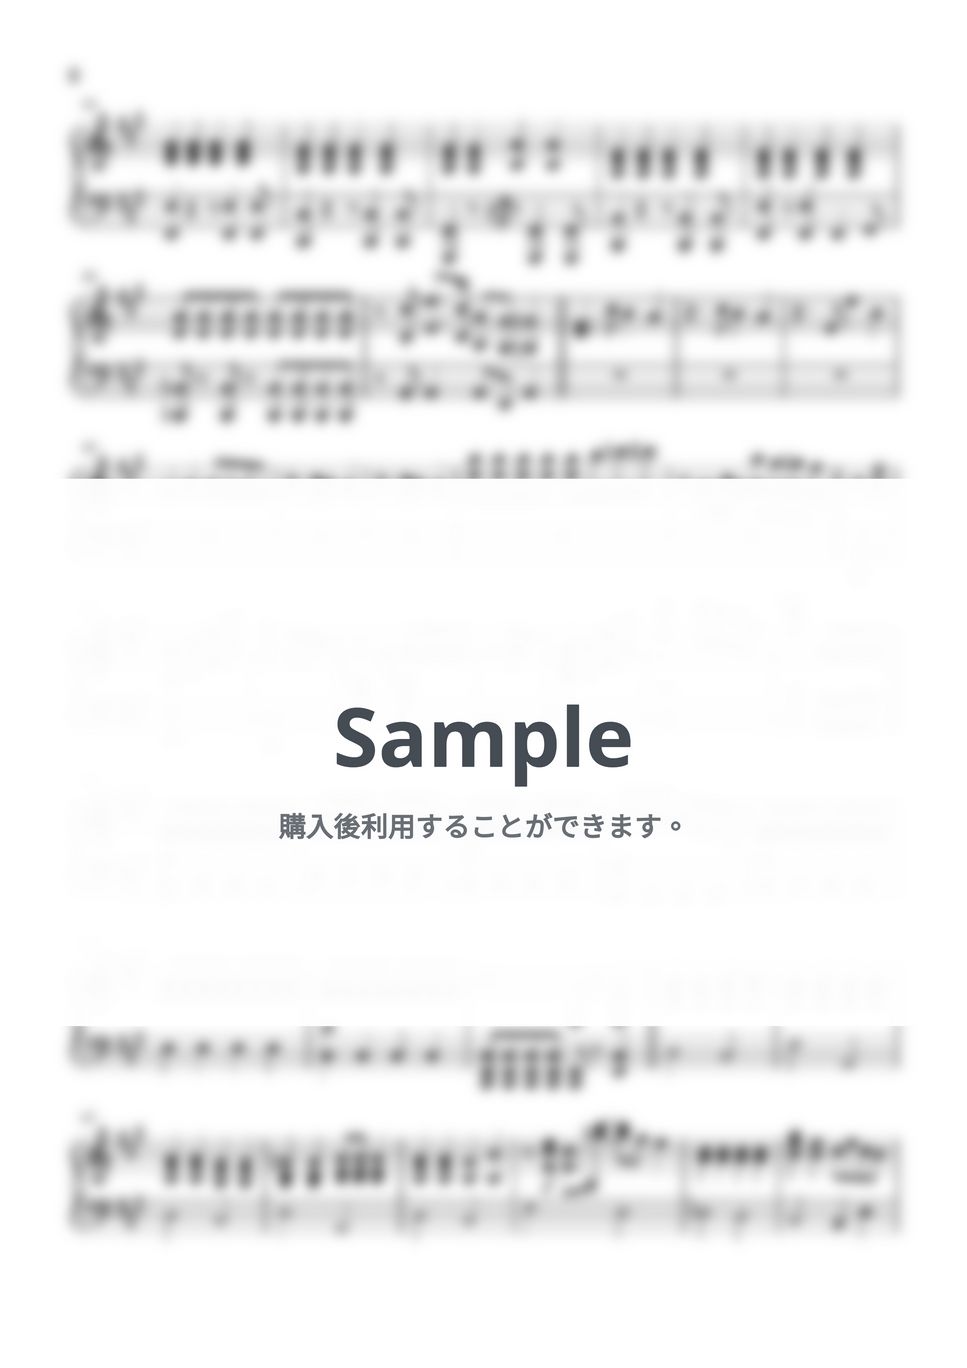 aiko - ストロー【ピアノパート】 (ピアノパート/コピーバンド) by とりちゃん